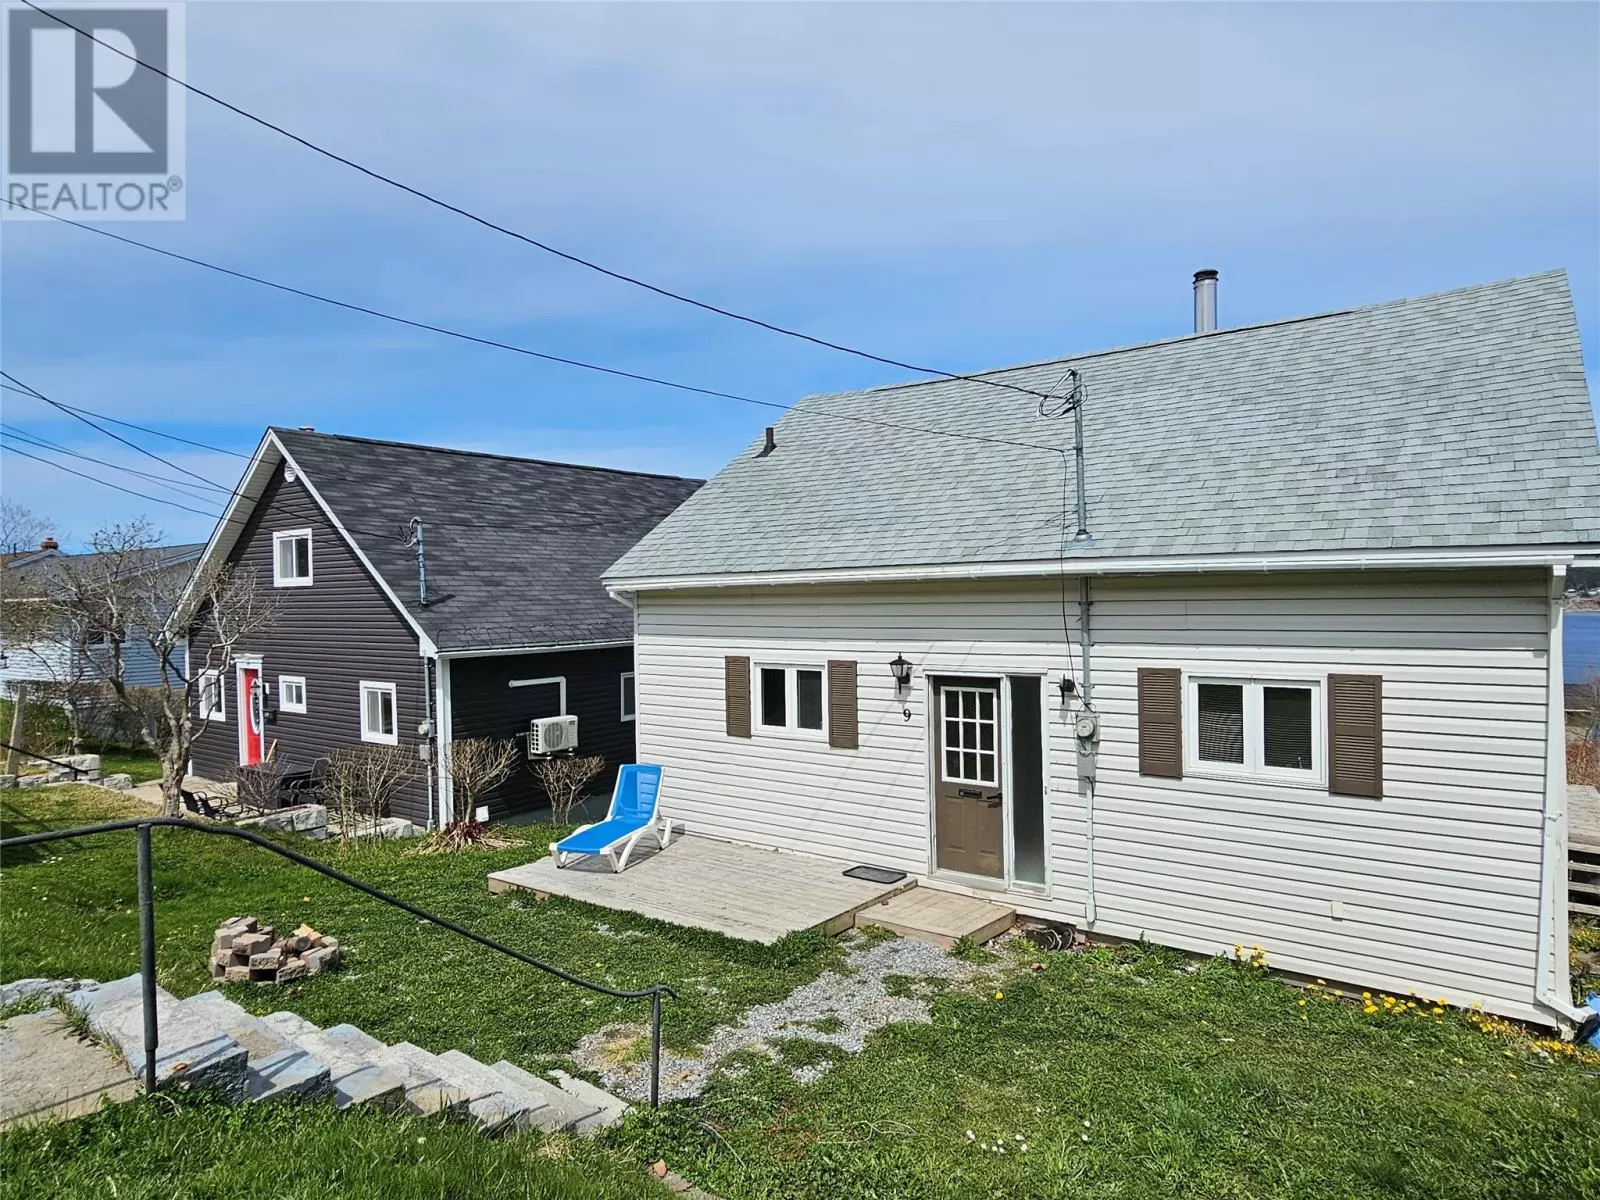 House for rent: 9 Gilletts Lane, Corner Brook, Newfoundland & Labrador A2H 2G6